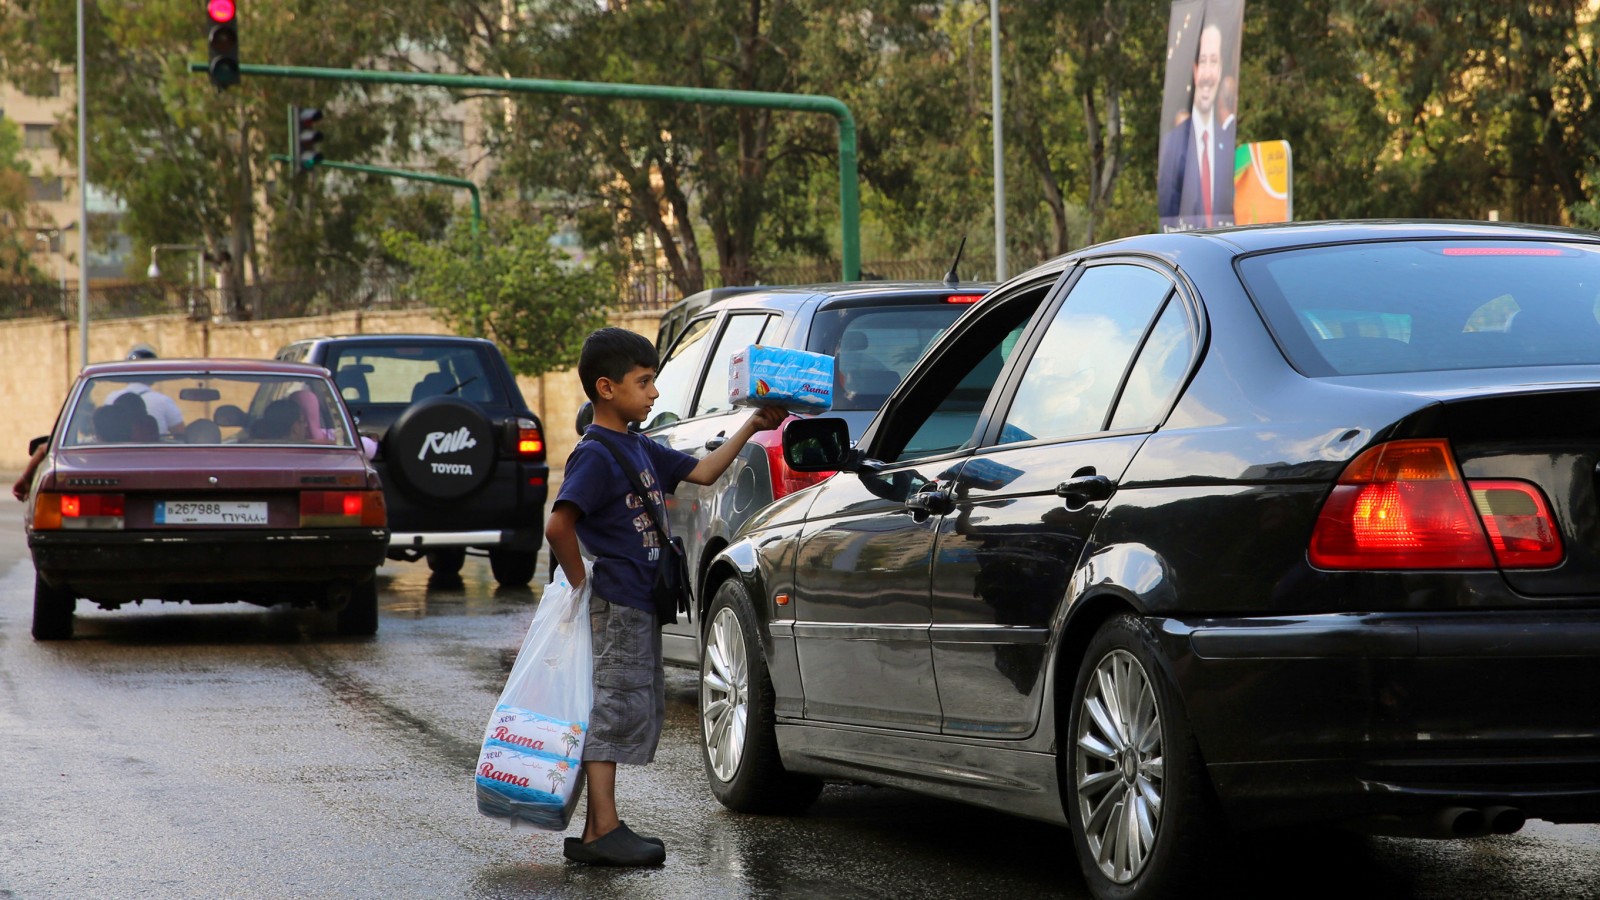 עלי חמאדה, שנמלט עם משפחתו מחלב, מוכר ממחטות נייר לנהגים בבירות. צילום: סוכנות AP.